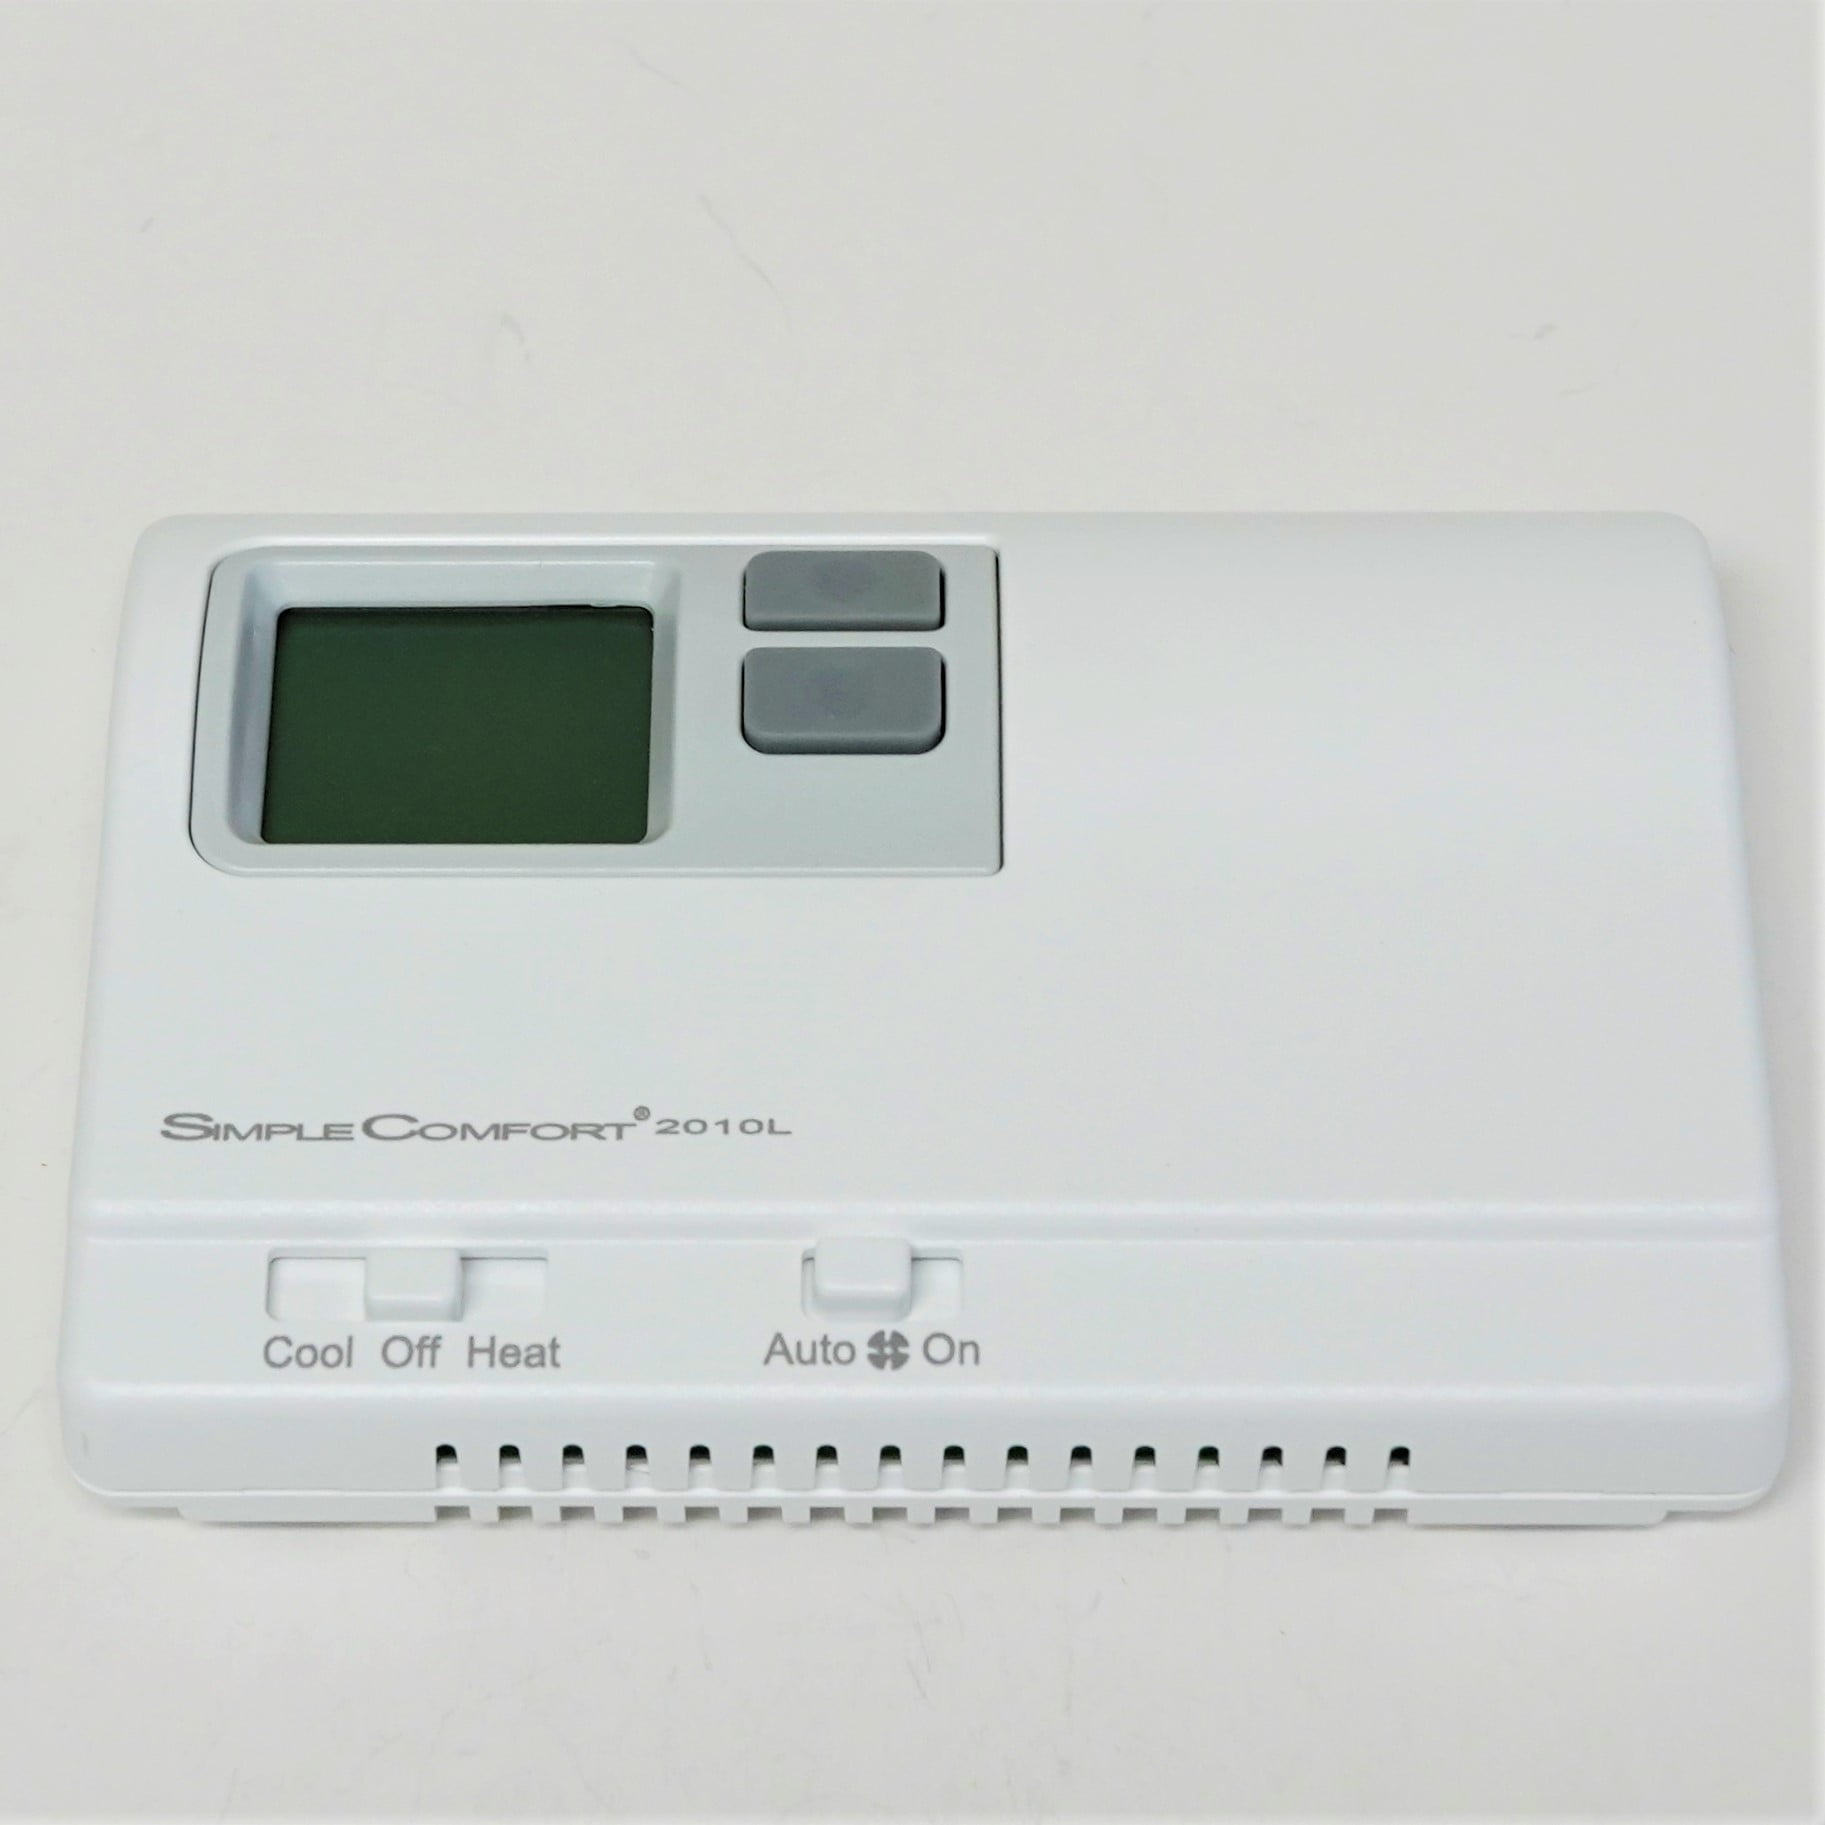 ICM Controls SC1600L - Termostato de calor no programable Simple Comfort  con pantalla retroiluminada, funciona con pilas, sin salida de ventilador